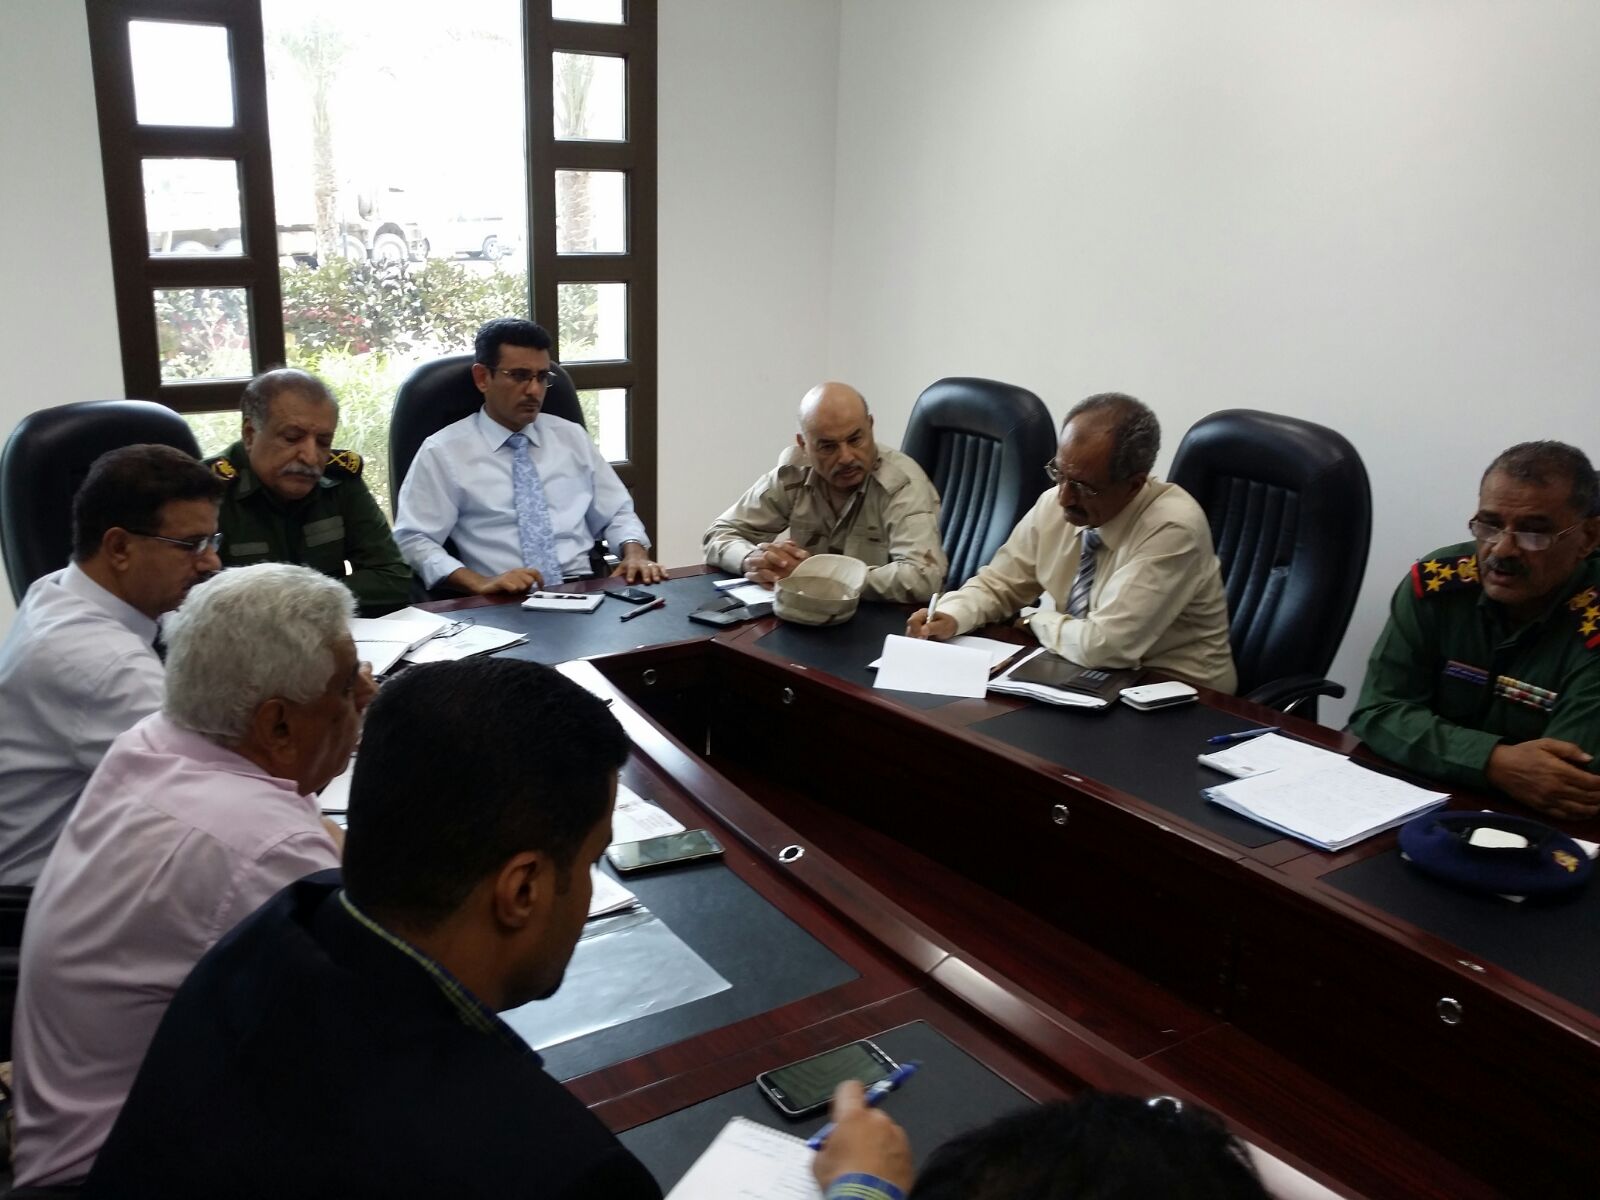 اللجنة الأمنية بإقليم عدن تناقش الوضع الأمني في محافظات الإقليم